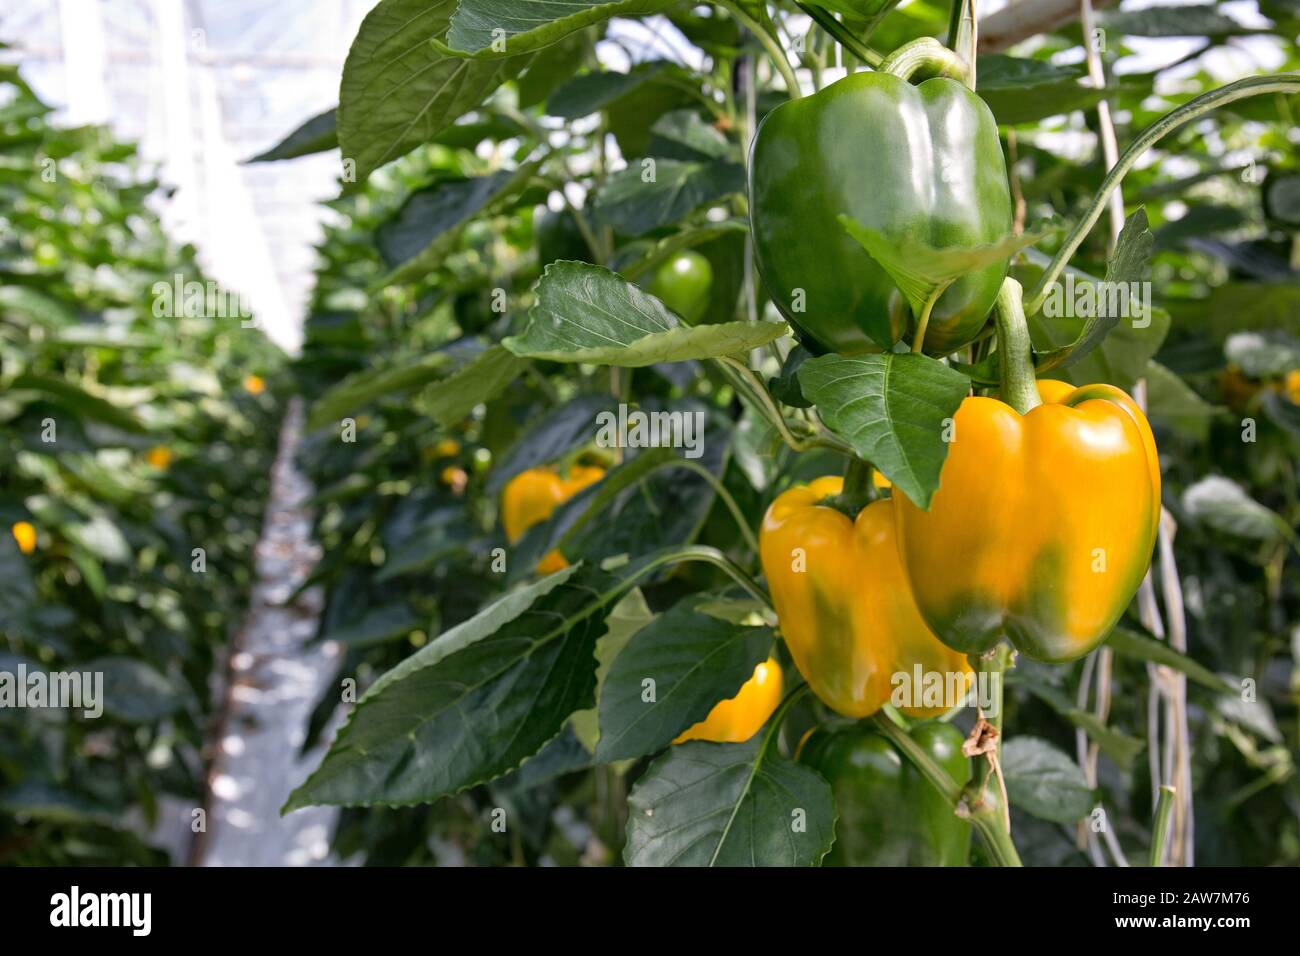 Reifen Sie gelbe und grüne Paprika in einem Gewächshaus, das für die Ernte bereit ist. Die meisten Paprika aus den Niederlanden werden exportiert. Stockfoto